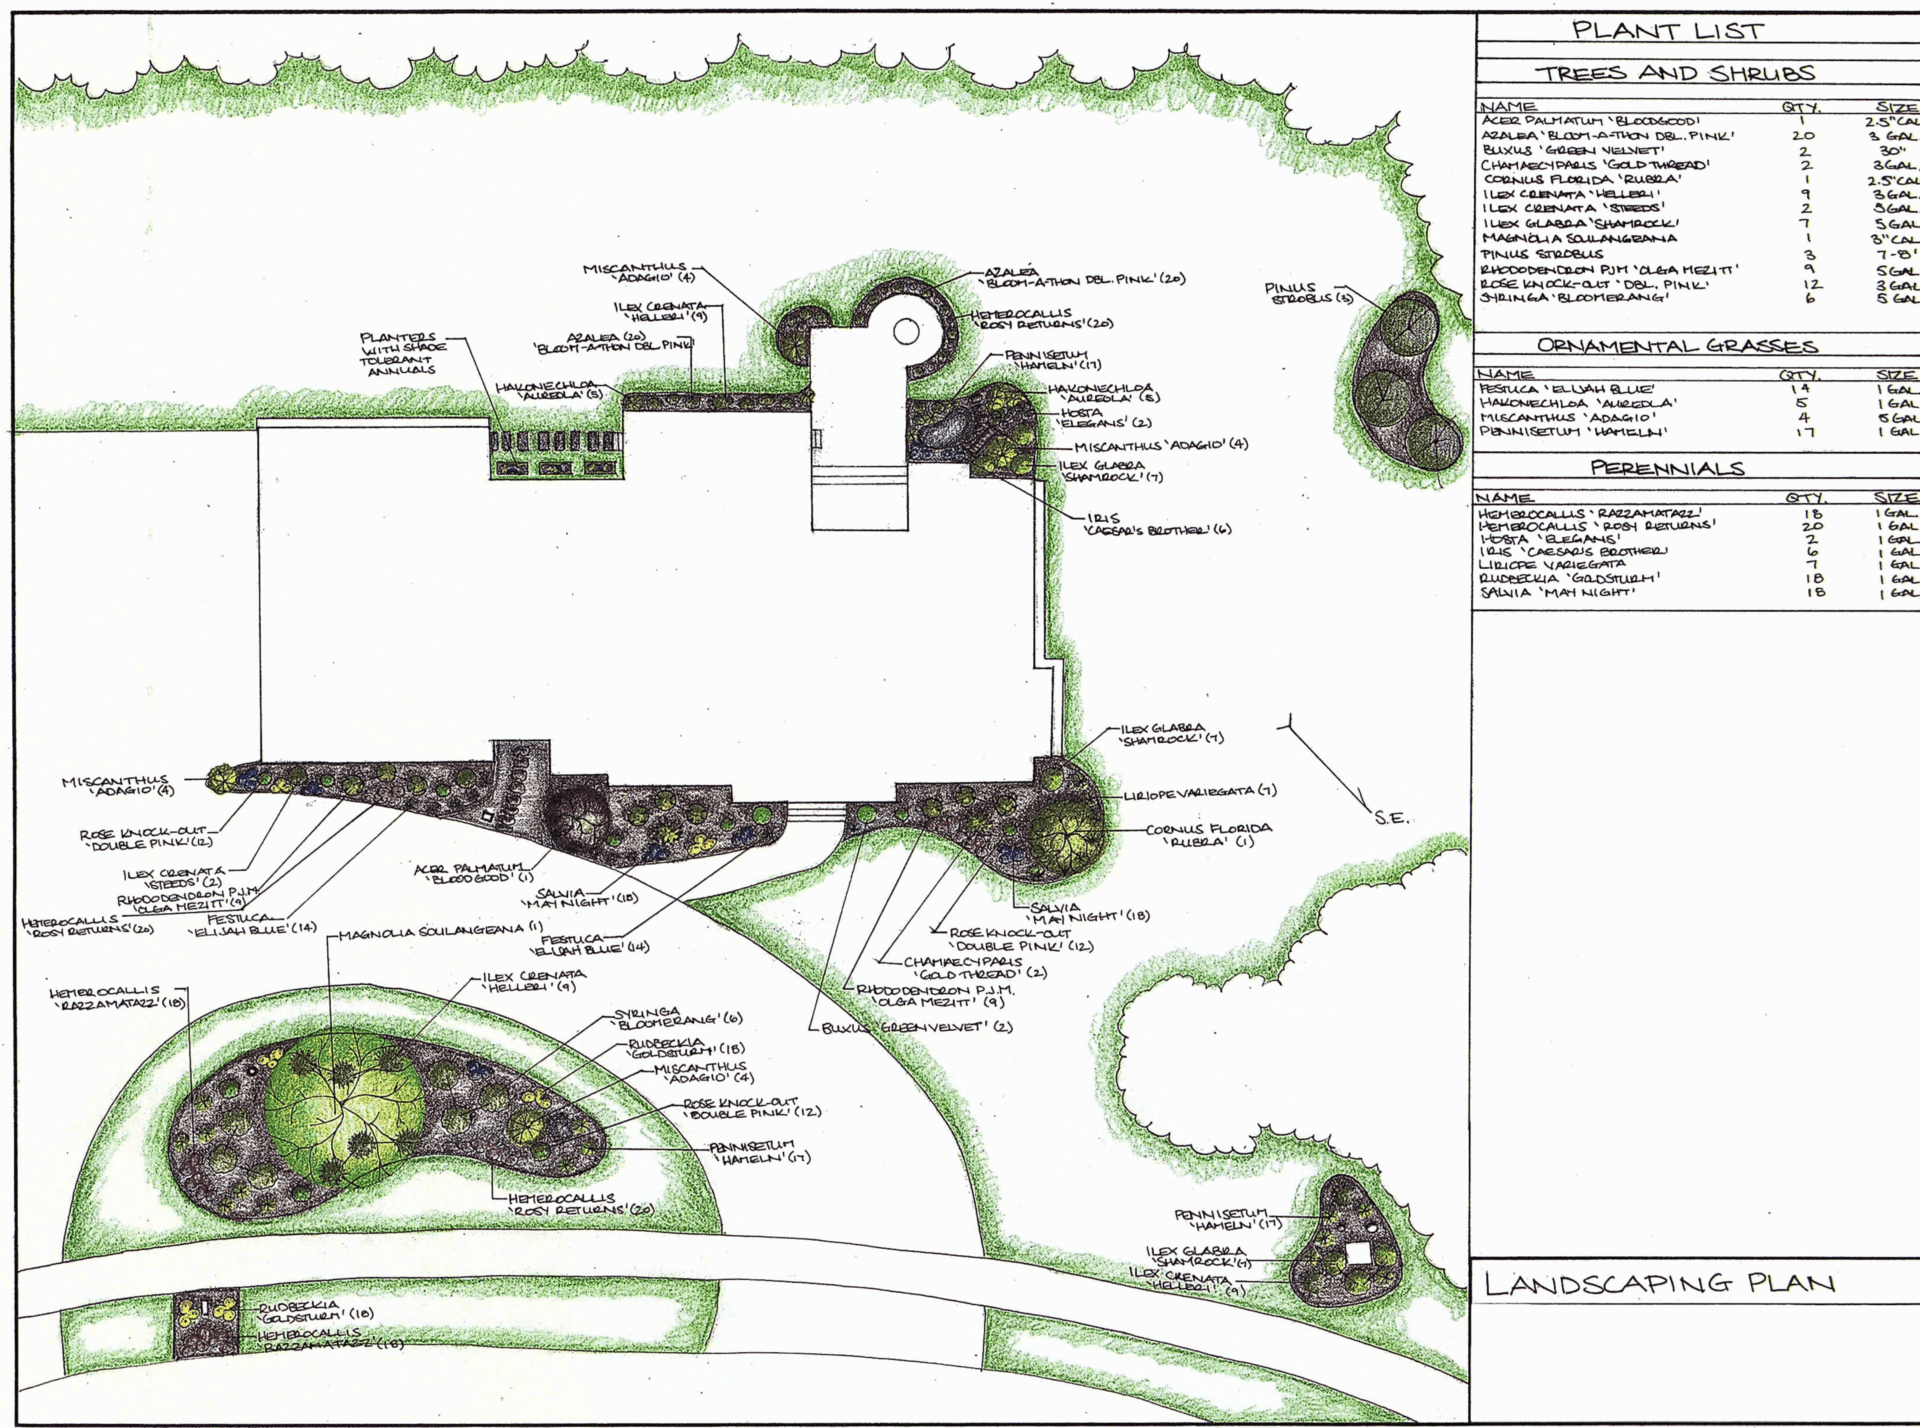 Landscaping plan 2